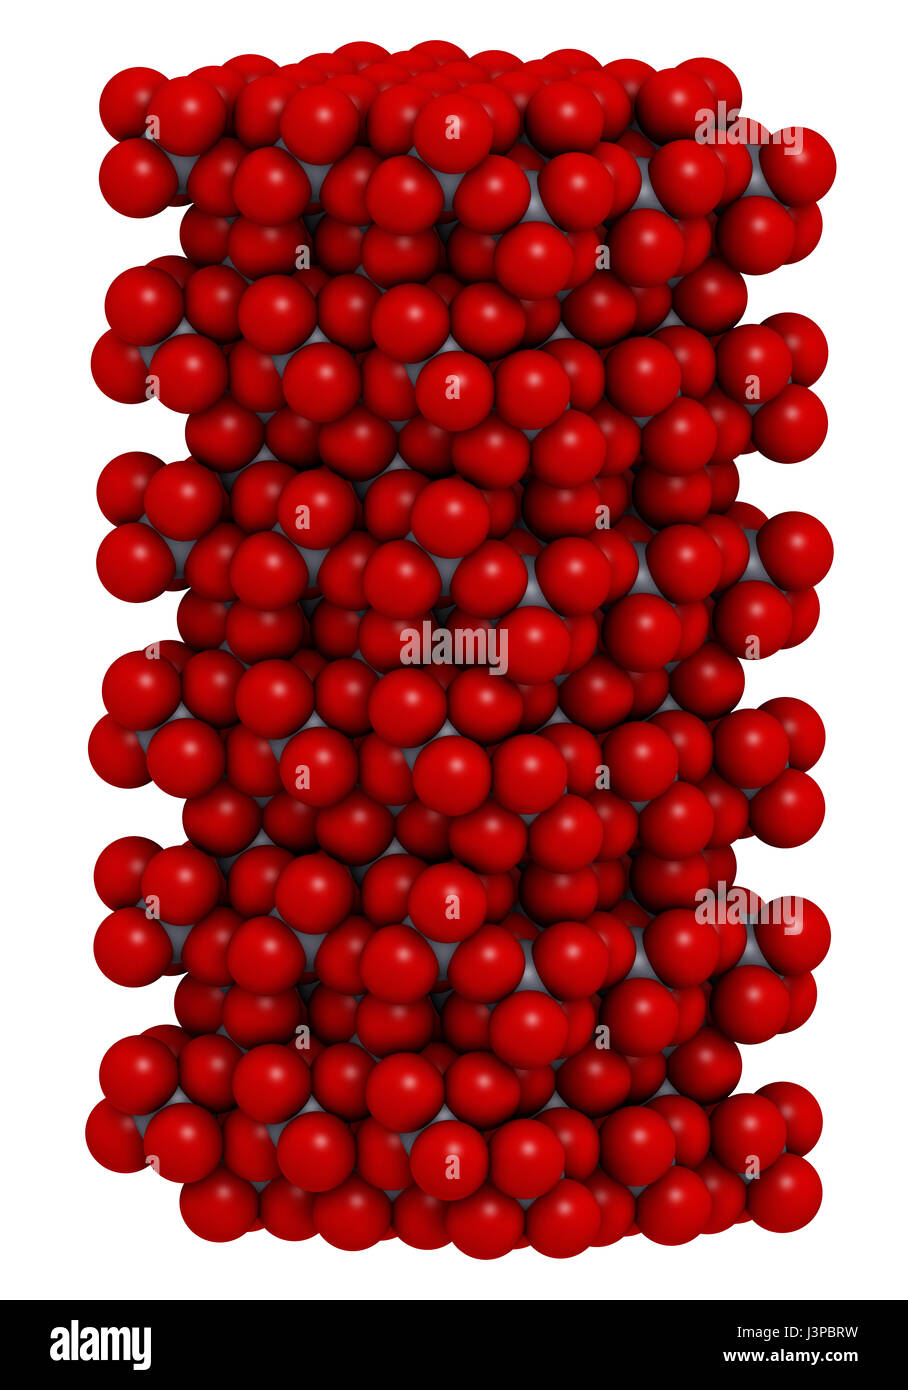 Korund (Aluminiumoxid), Kristallstruktur. Ruby Gems bestehen aus rot  transparent Korund, Saphir aus anderen Farbvarianten von transparenten  corun Stockfotografie - Alamy